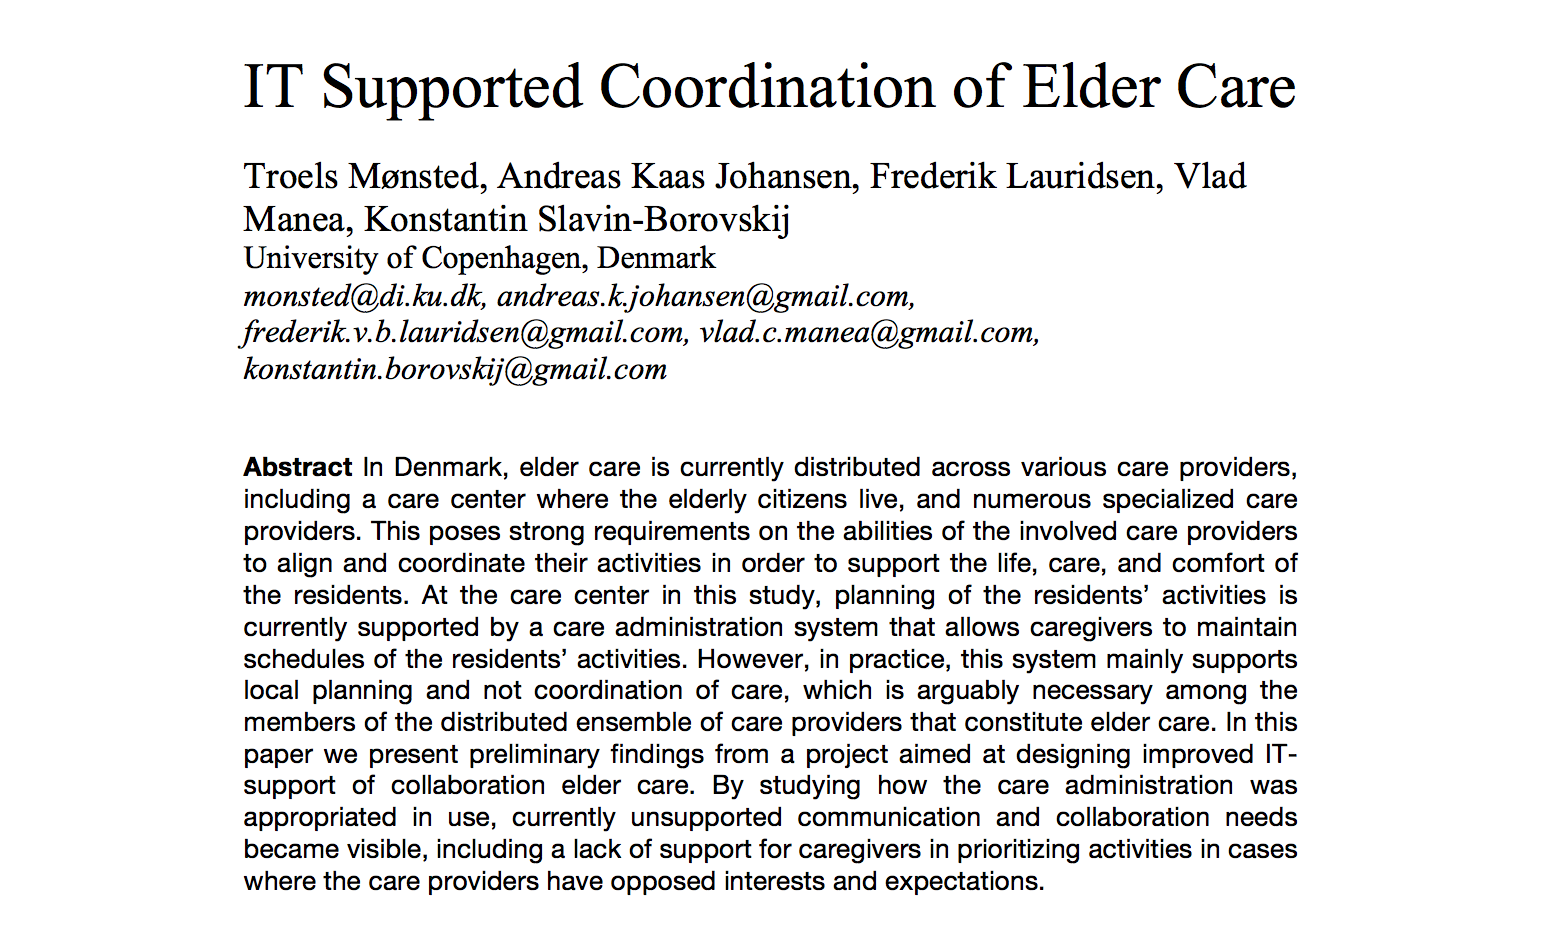 IT Supported Coordination of Elder Care” workshop artikel